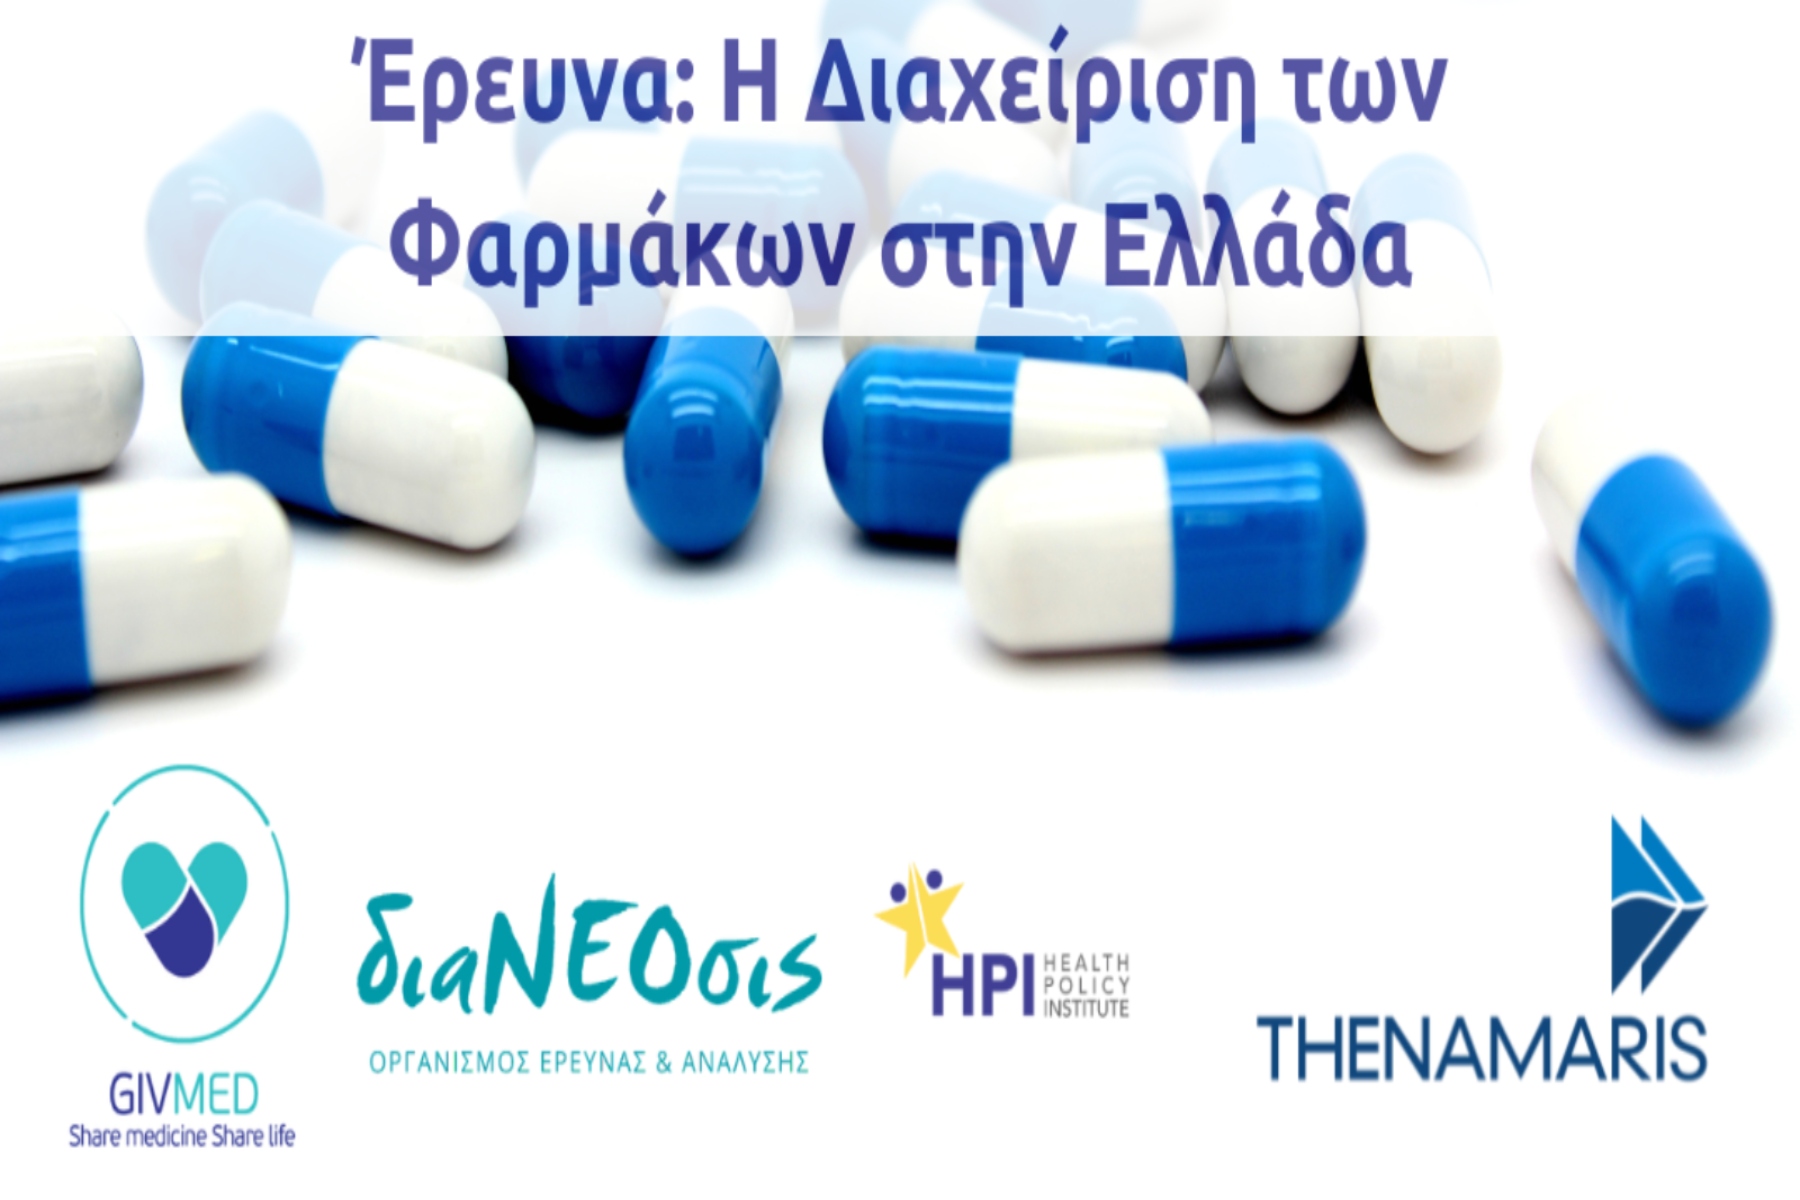 GIVMED: Έρευνα για τη Διαχείριση των Φαρμάκων στην Ελλάδα